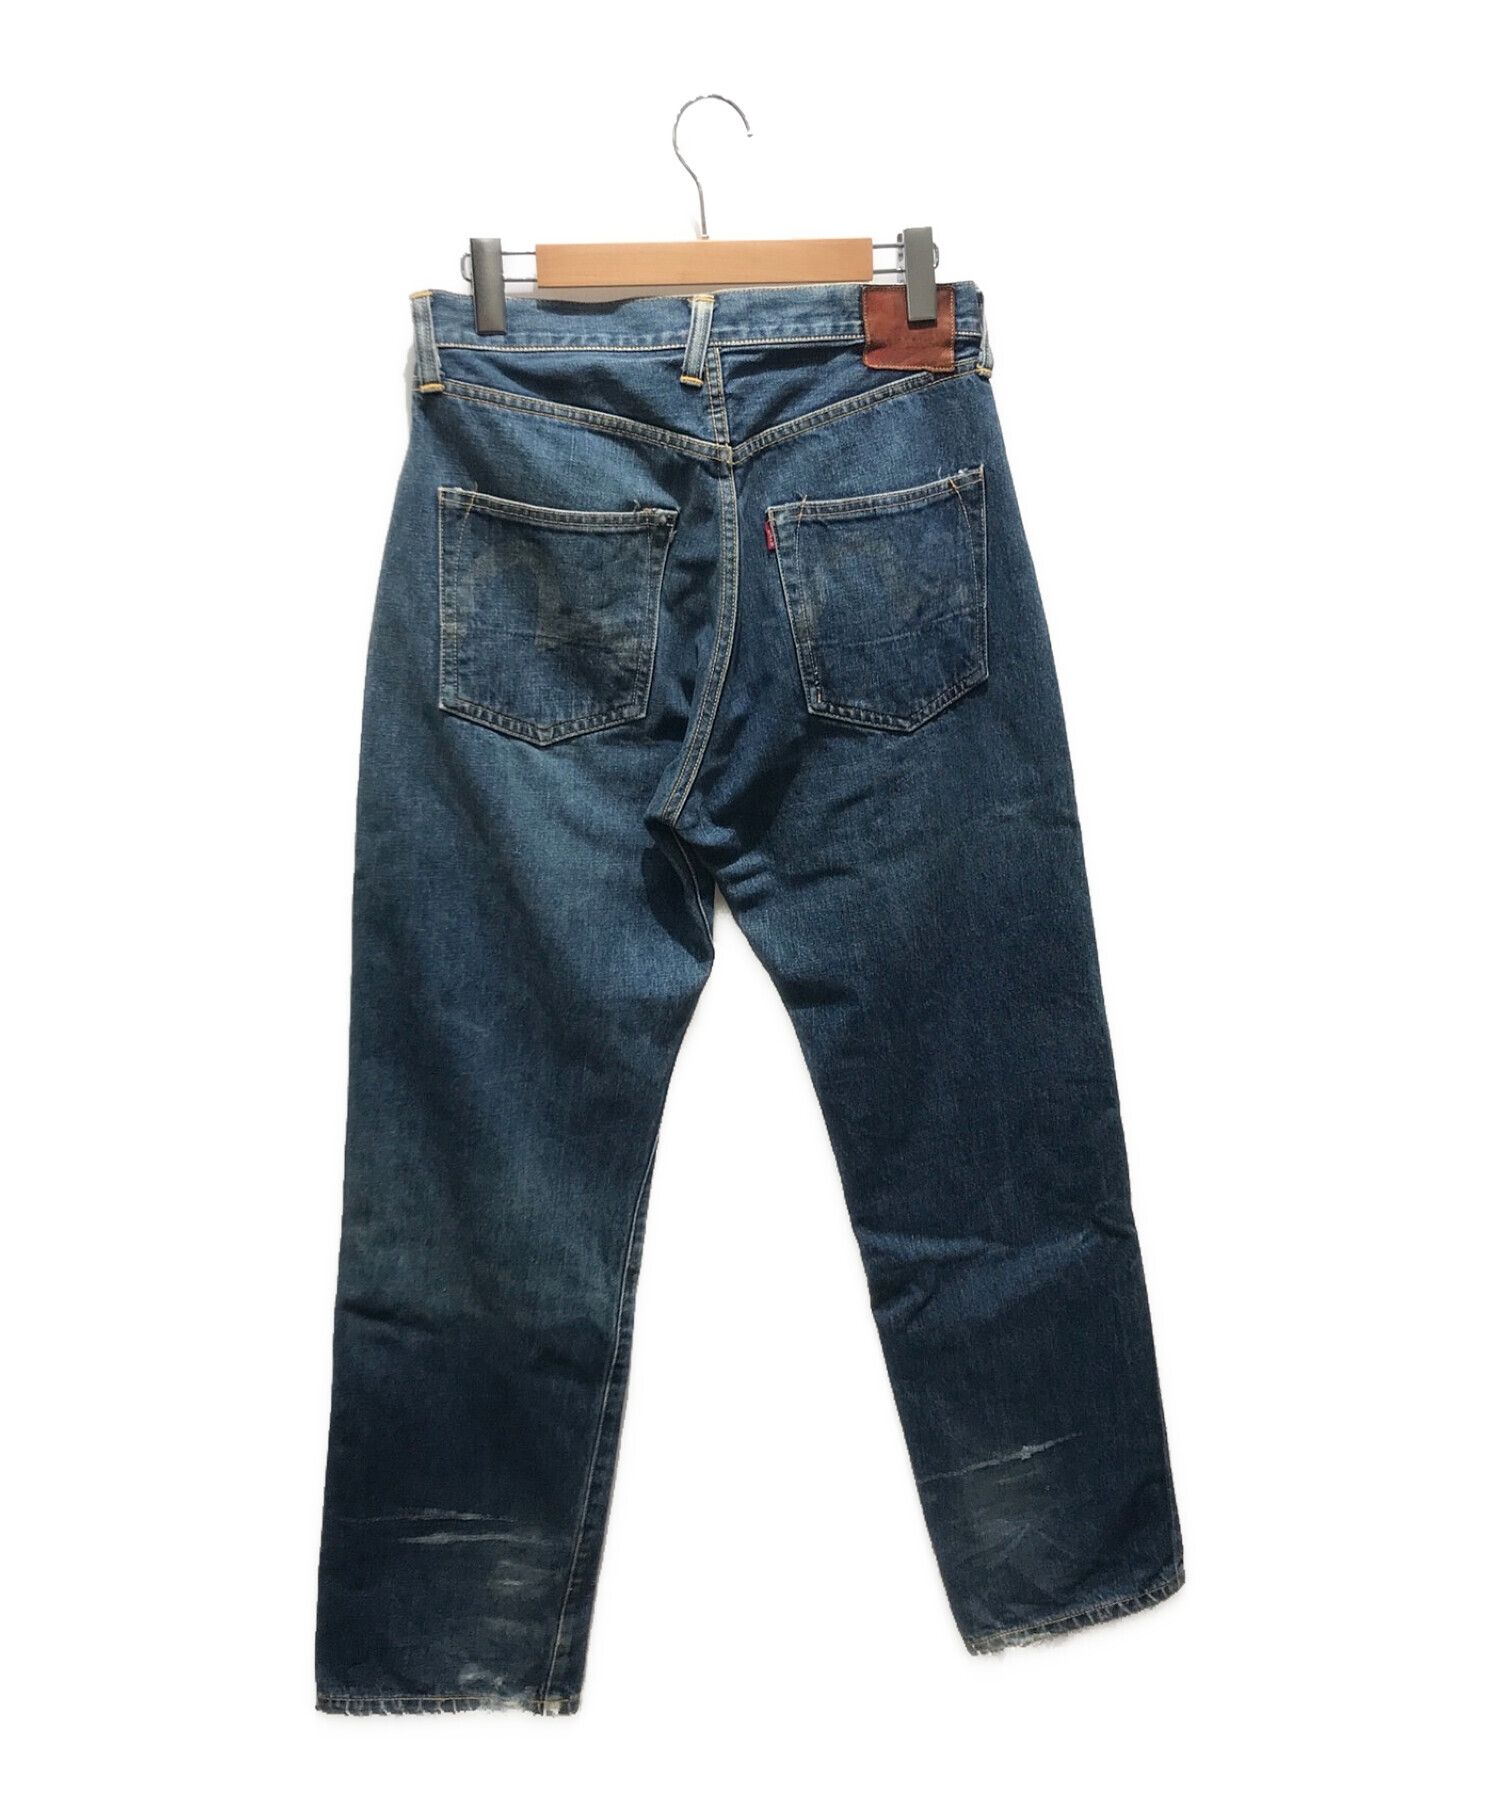 中古・古着通販】Evisu Jeans (エヴィスジーンズ) デニムパンツ 2501